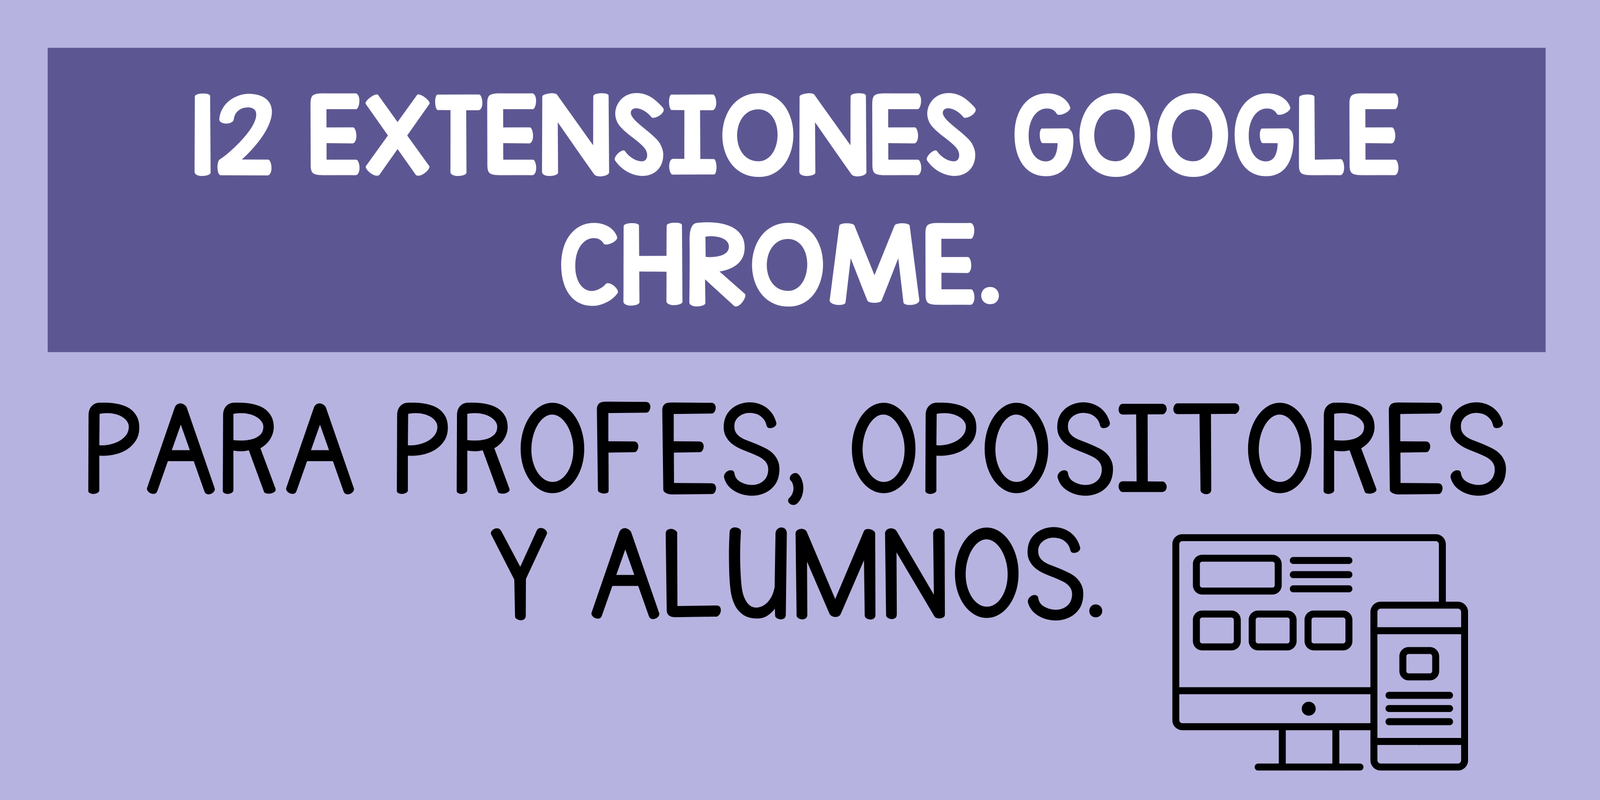 12 extensiones Google Chrome.